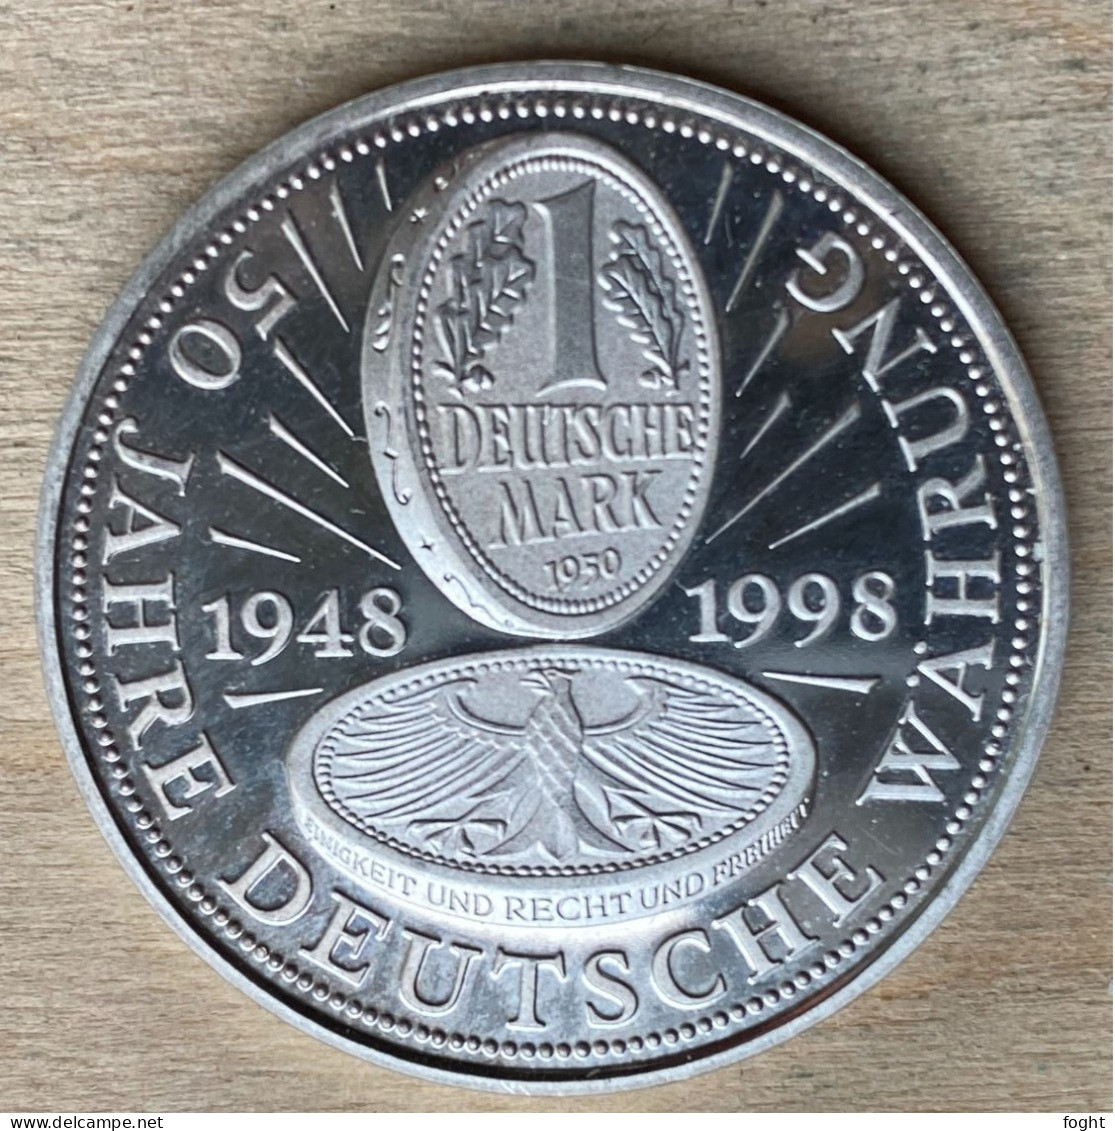 1998 Germany /BRD Medaille  50 Jahre Deutsche Währung .500 Silber,PP,7225 - Professionals/Firms